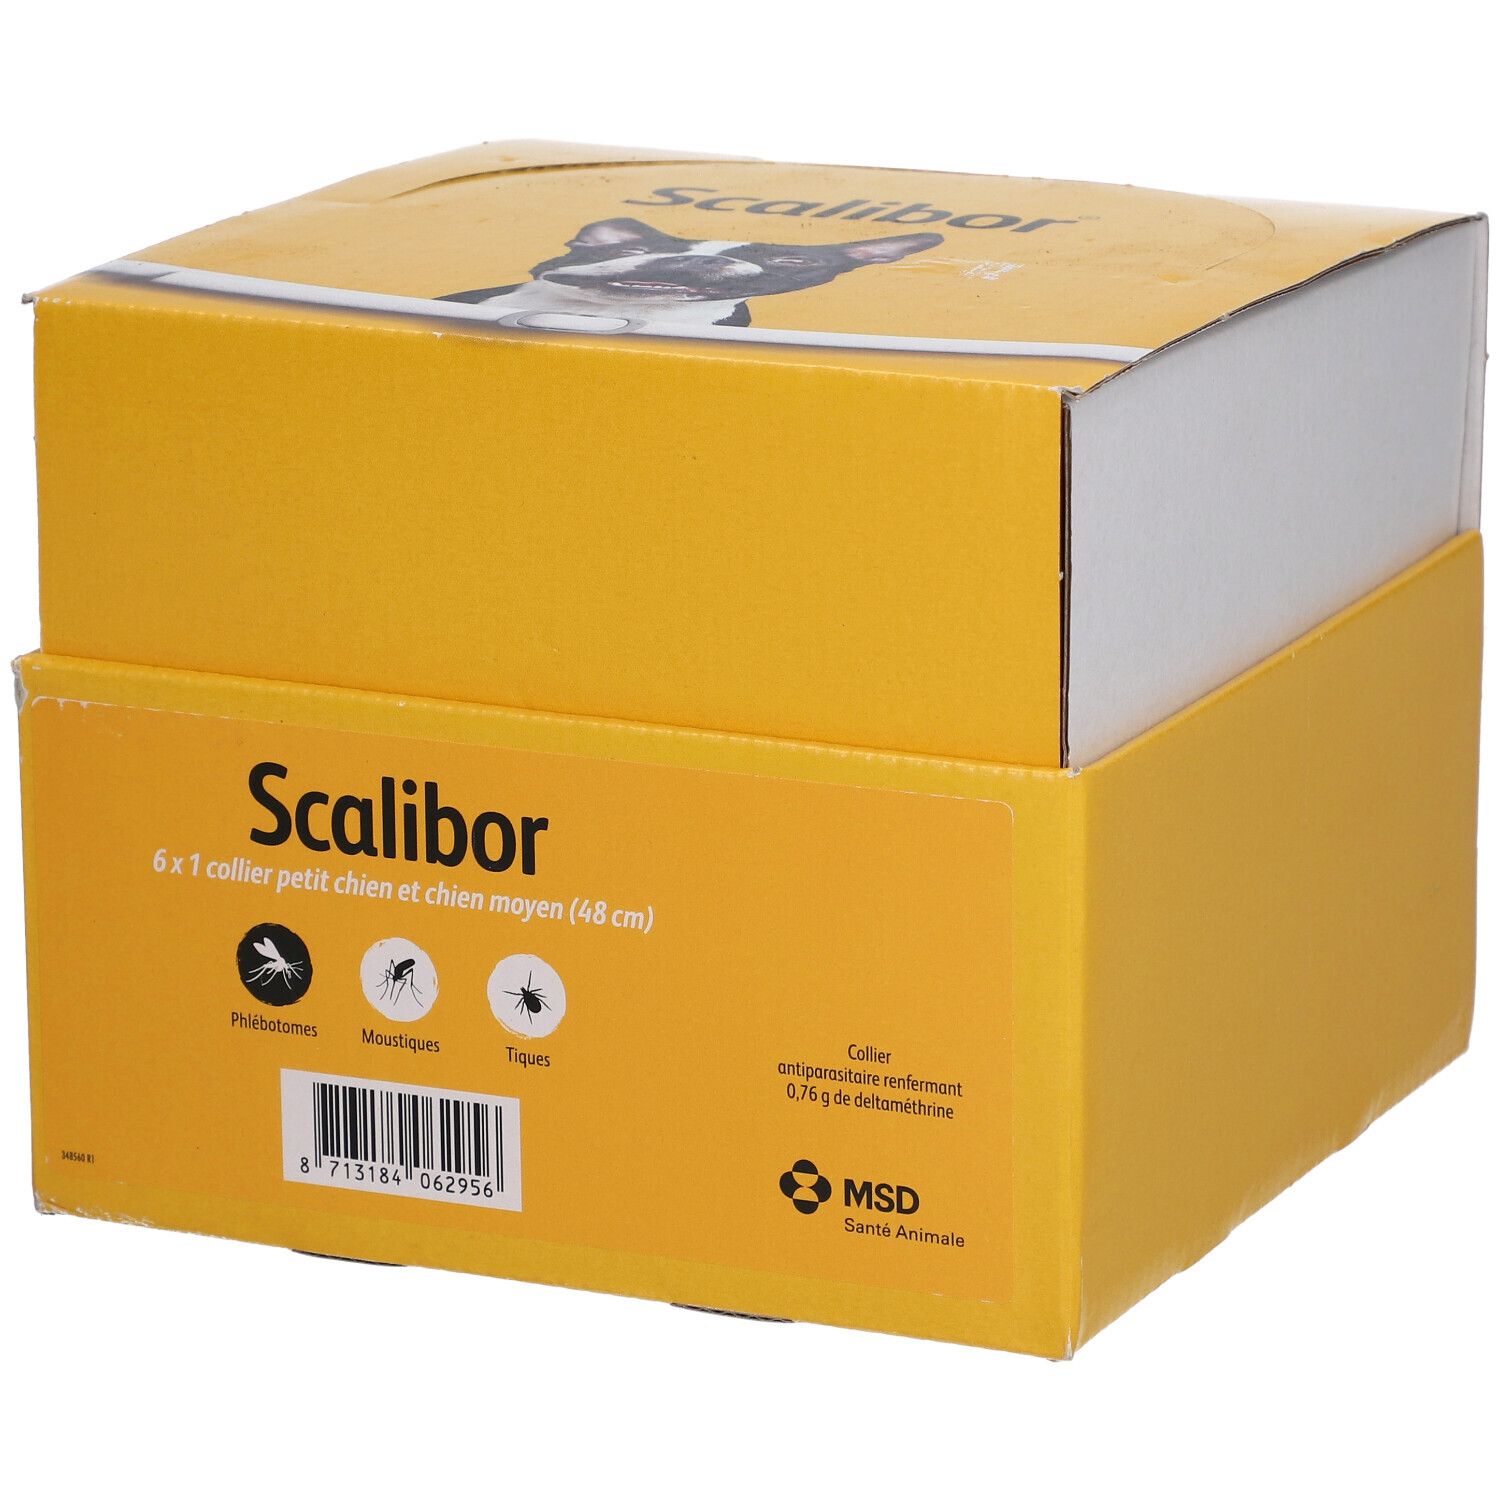 Scalibor® Collier anti-tique pour chien moyen 48 cm